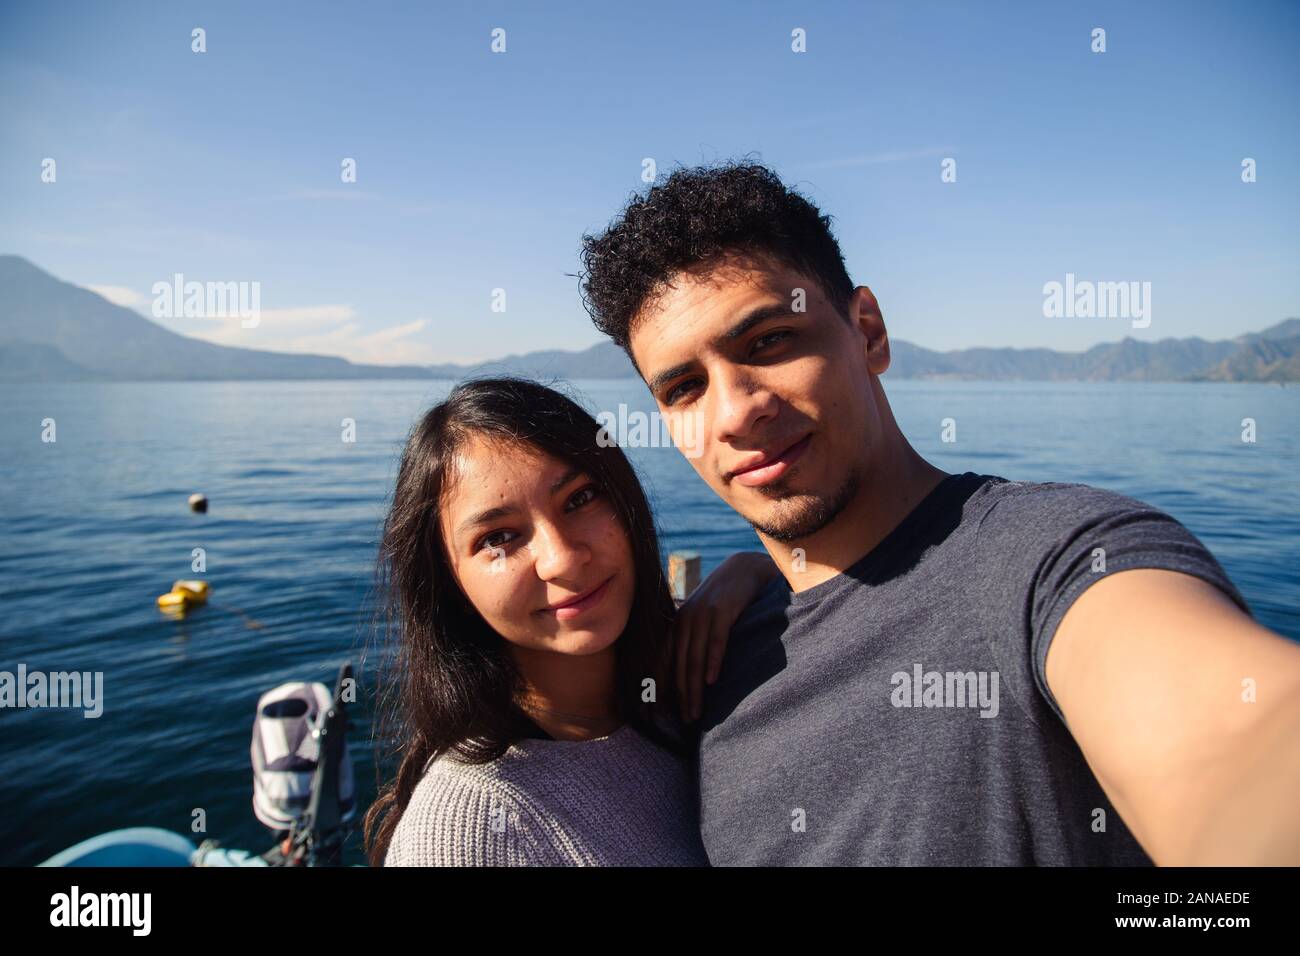 Traveling couple taking a selfie at Lake Atitlan in Guatemala Stock Photo